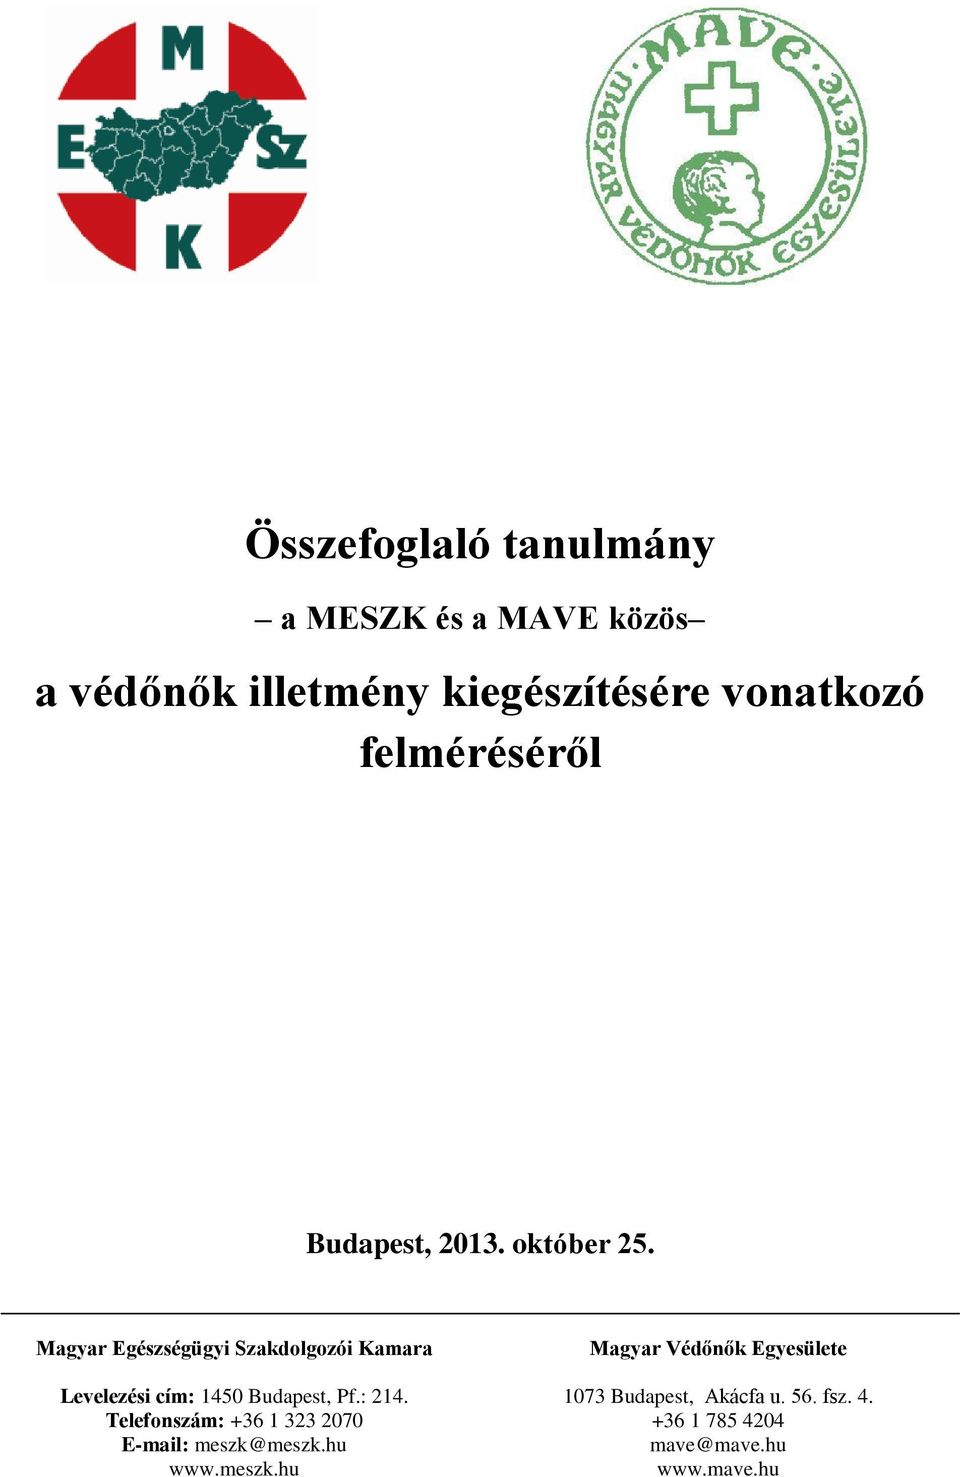 Magyar Egészségügyi Szakdolgozói Kamara Levelezési cím: 1450 Budapest, Pf.: 214.